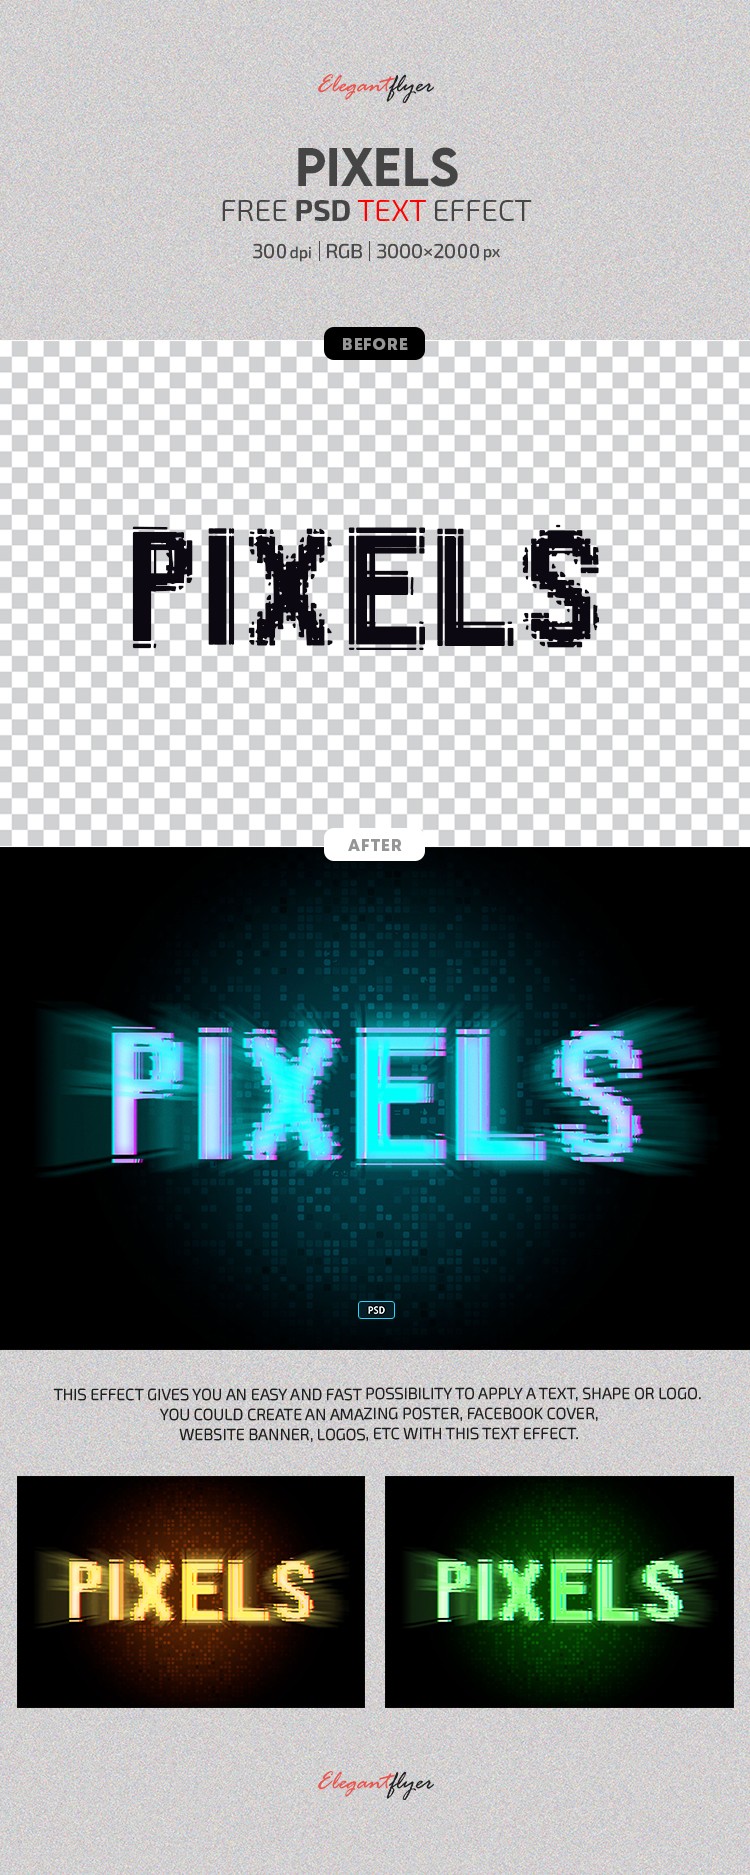 Efekt tekstu pikseli by ElegantFlyer